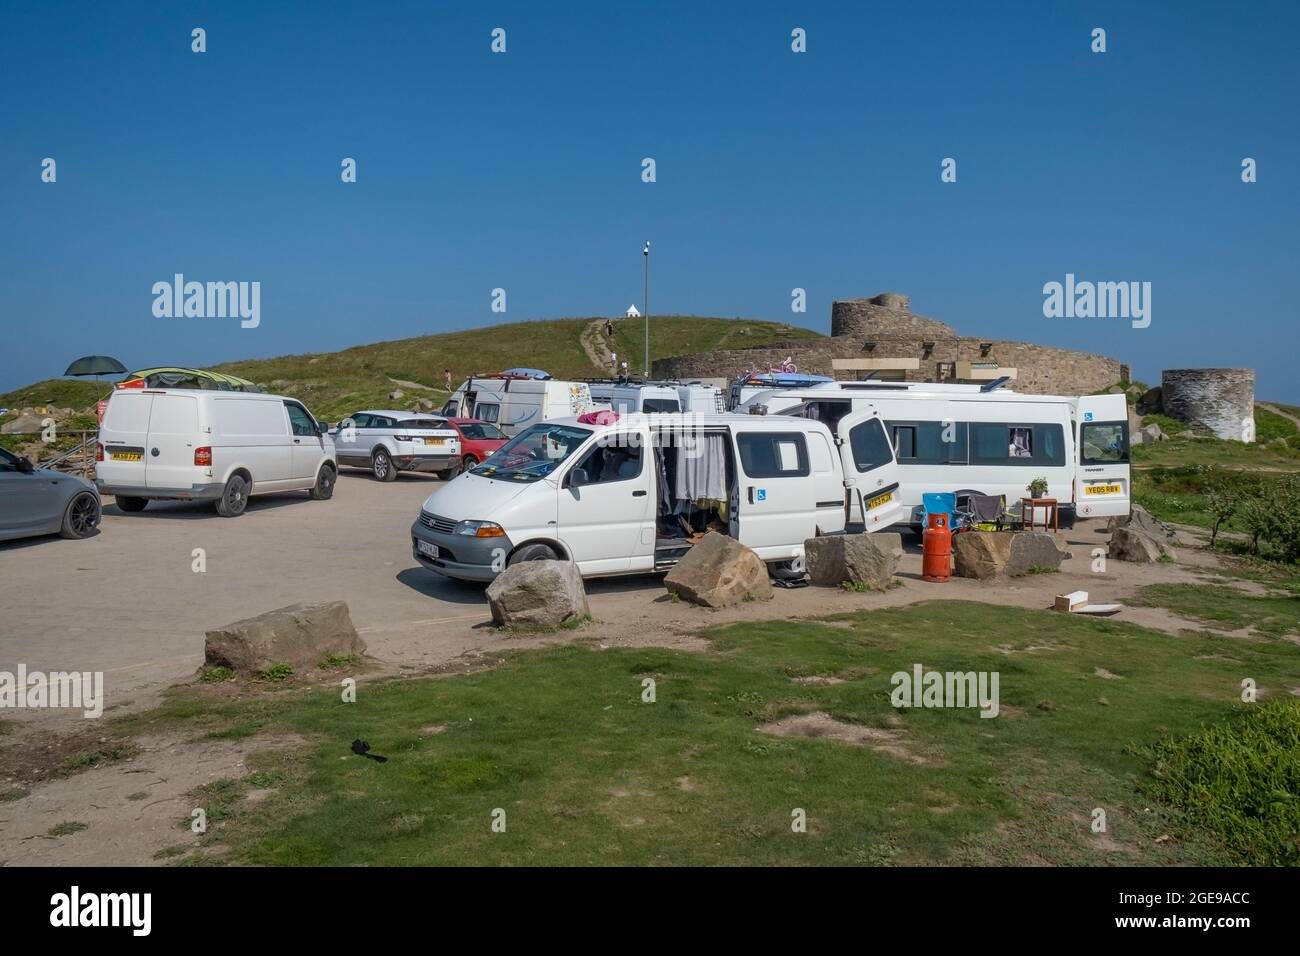 Parcheggio Towan Head pieno di furgoni Van Lifer e camper vacanze a Newquay in Cornovaglia. Foto Stock